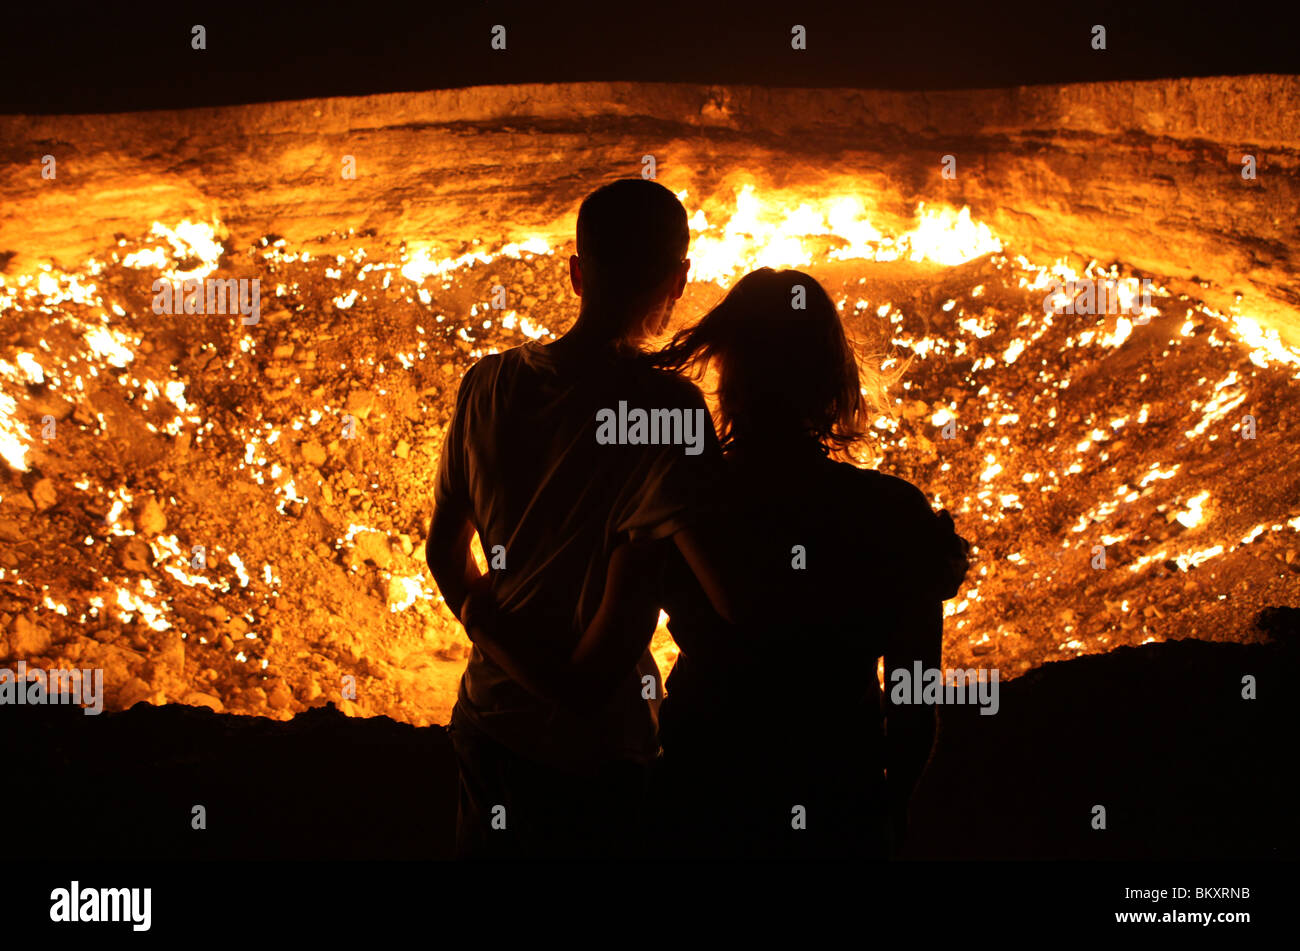 Derweze oder Darvaza, aka als das Tor zur Hölle ist ein riesiger Krater der Verbrennung von Erdgas in der Karakum Wüste in Turkmenistan. Stockfoto